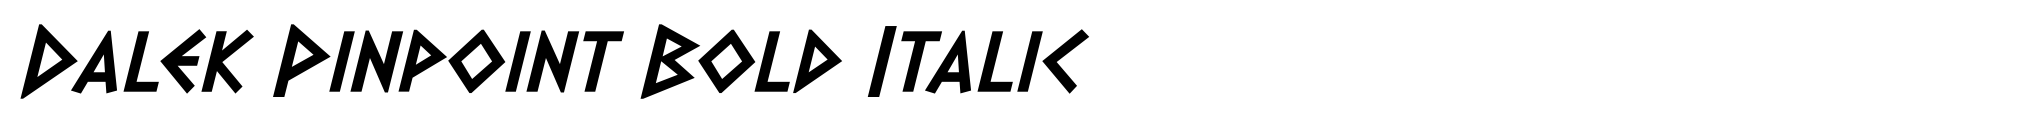 Dalek Pinpoint Bold Italic image